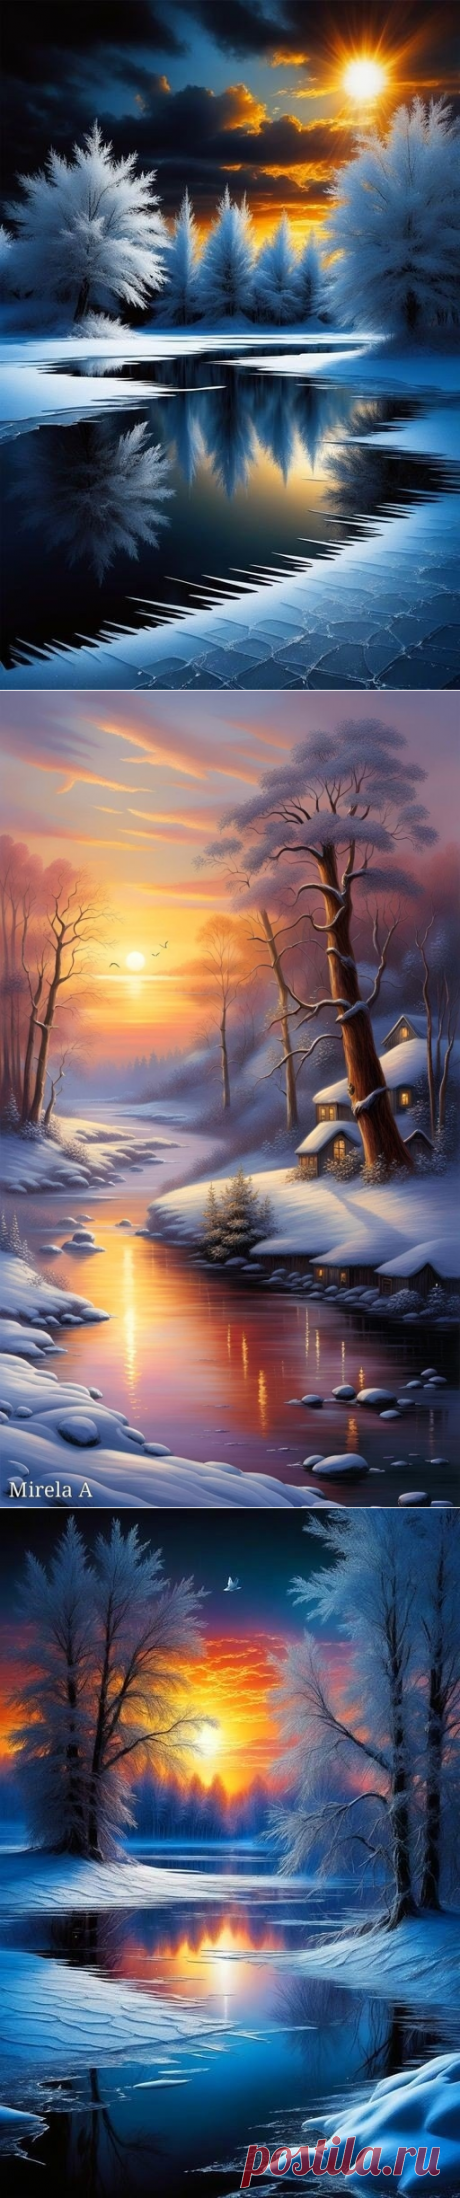 Зимний пейзаж от Любови Меллис.